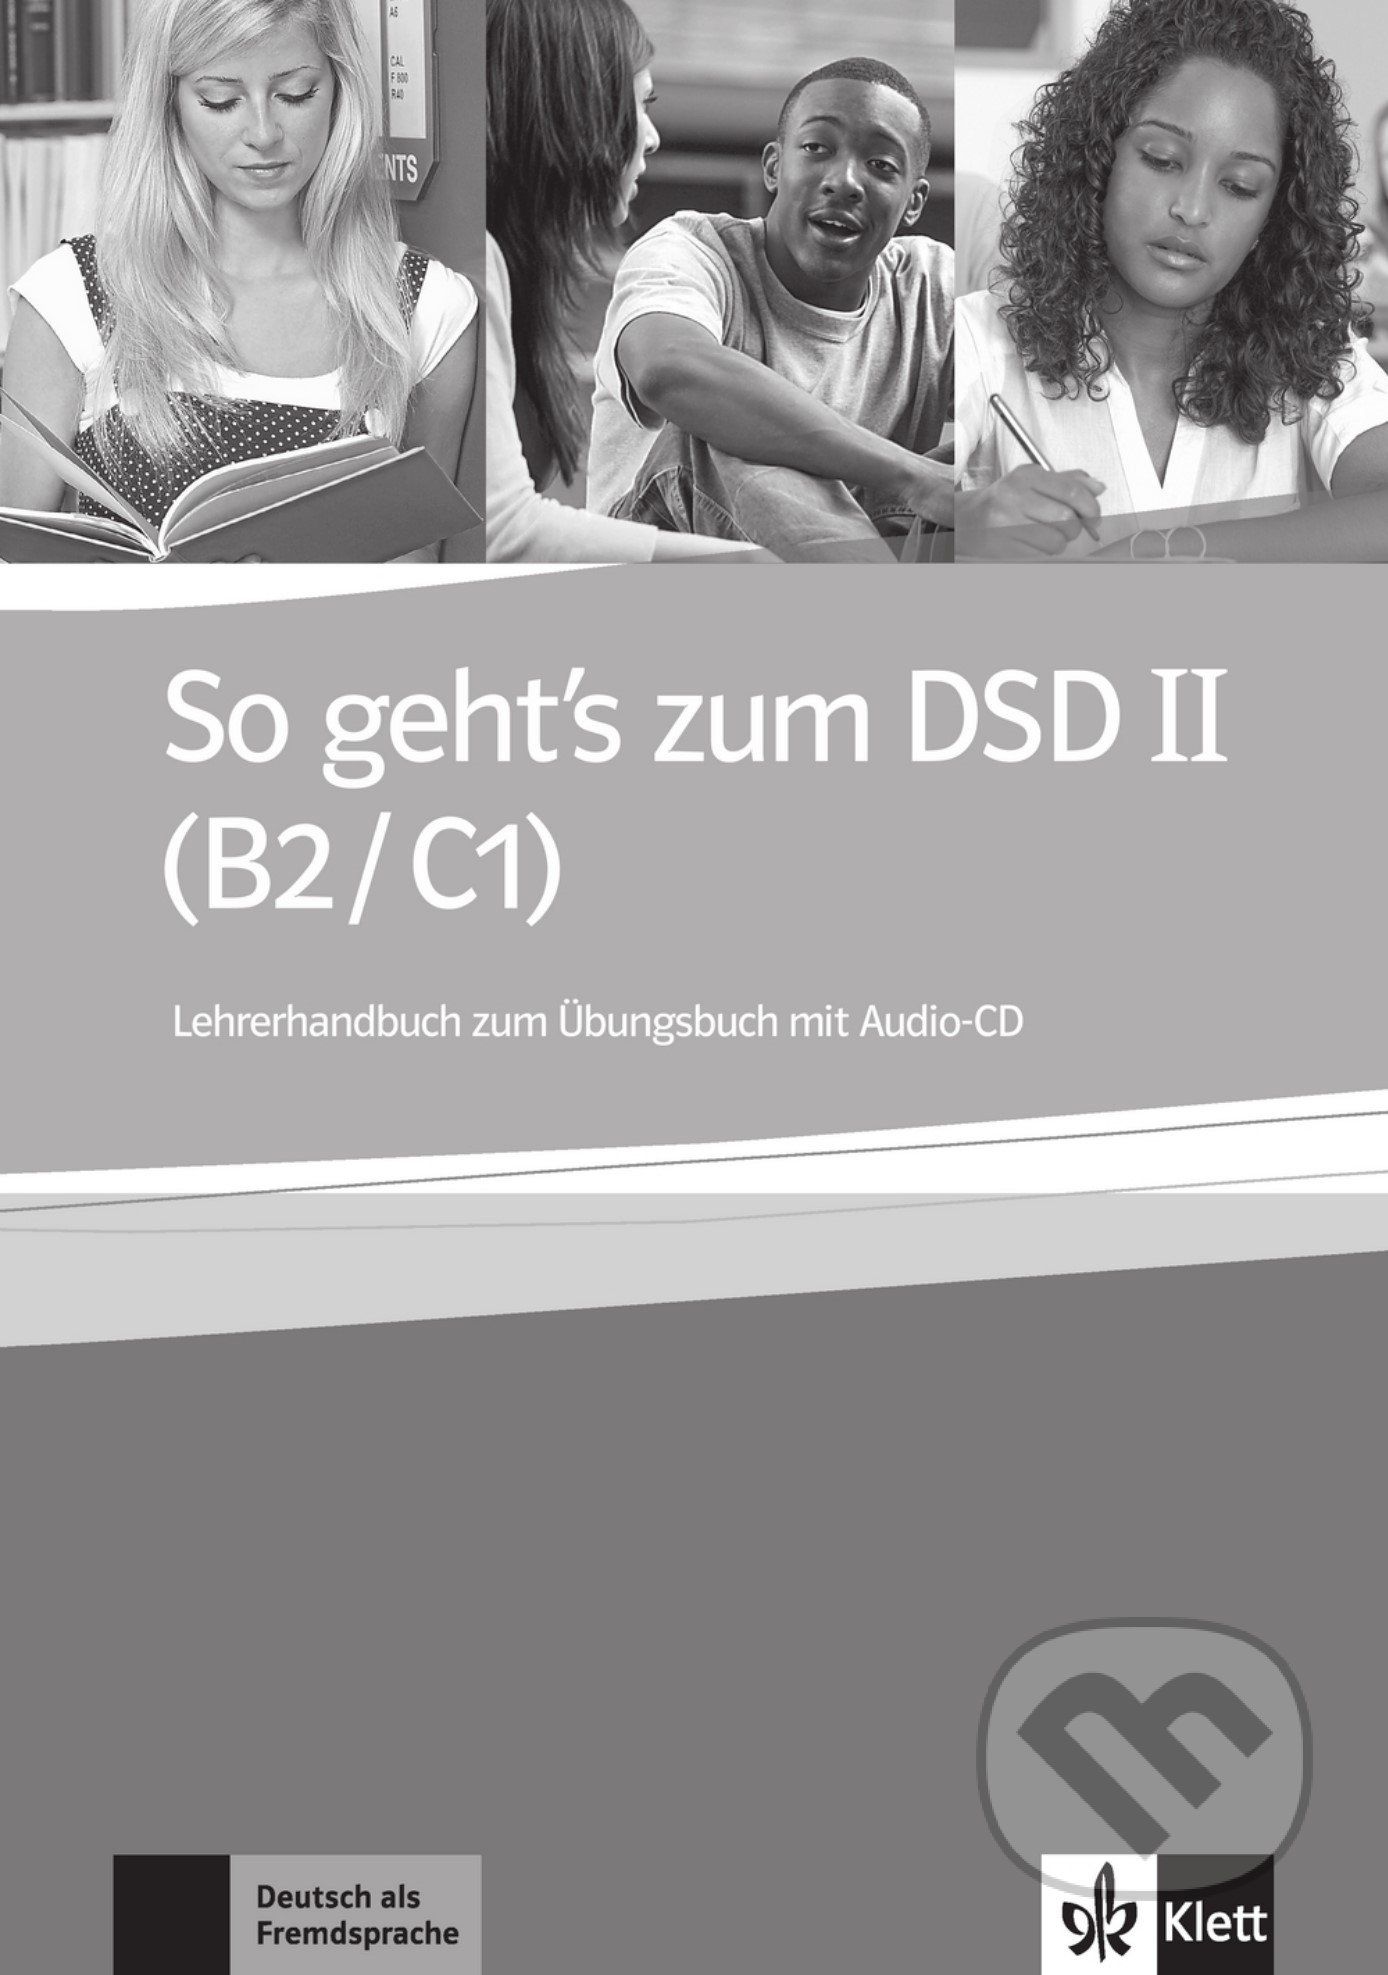 So geht’s zum DSD - Metodická příručka + CD - Klett - obrázek 1